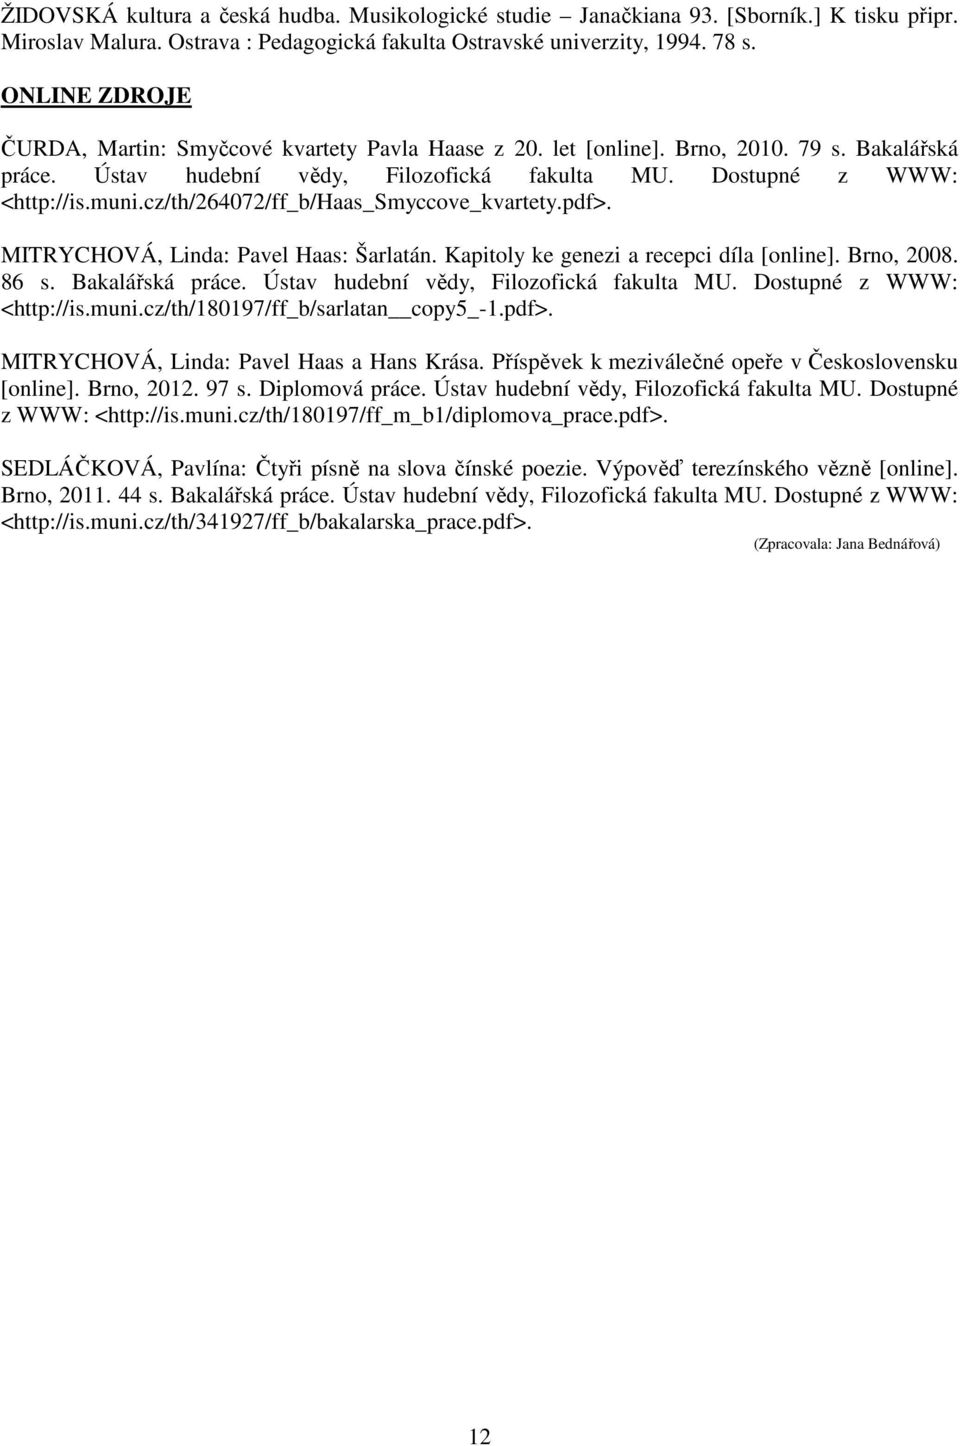 cz/th/264072/ff_b/haas_smyccove_kvartety.pdf>. MITRYCHOVÁ, Linda: Pavel Haas: Šarlatán. Kapitoly ke genezi a recepci díla [online]. Brno, 2008. 86 s. Bakalářská práce.